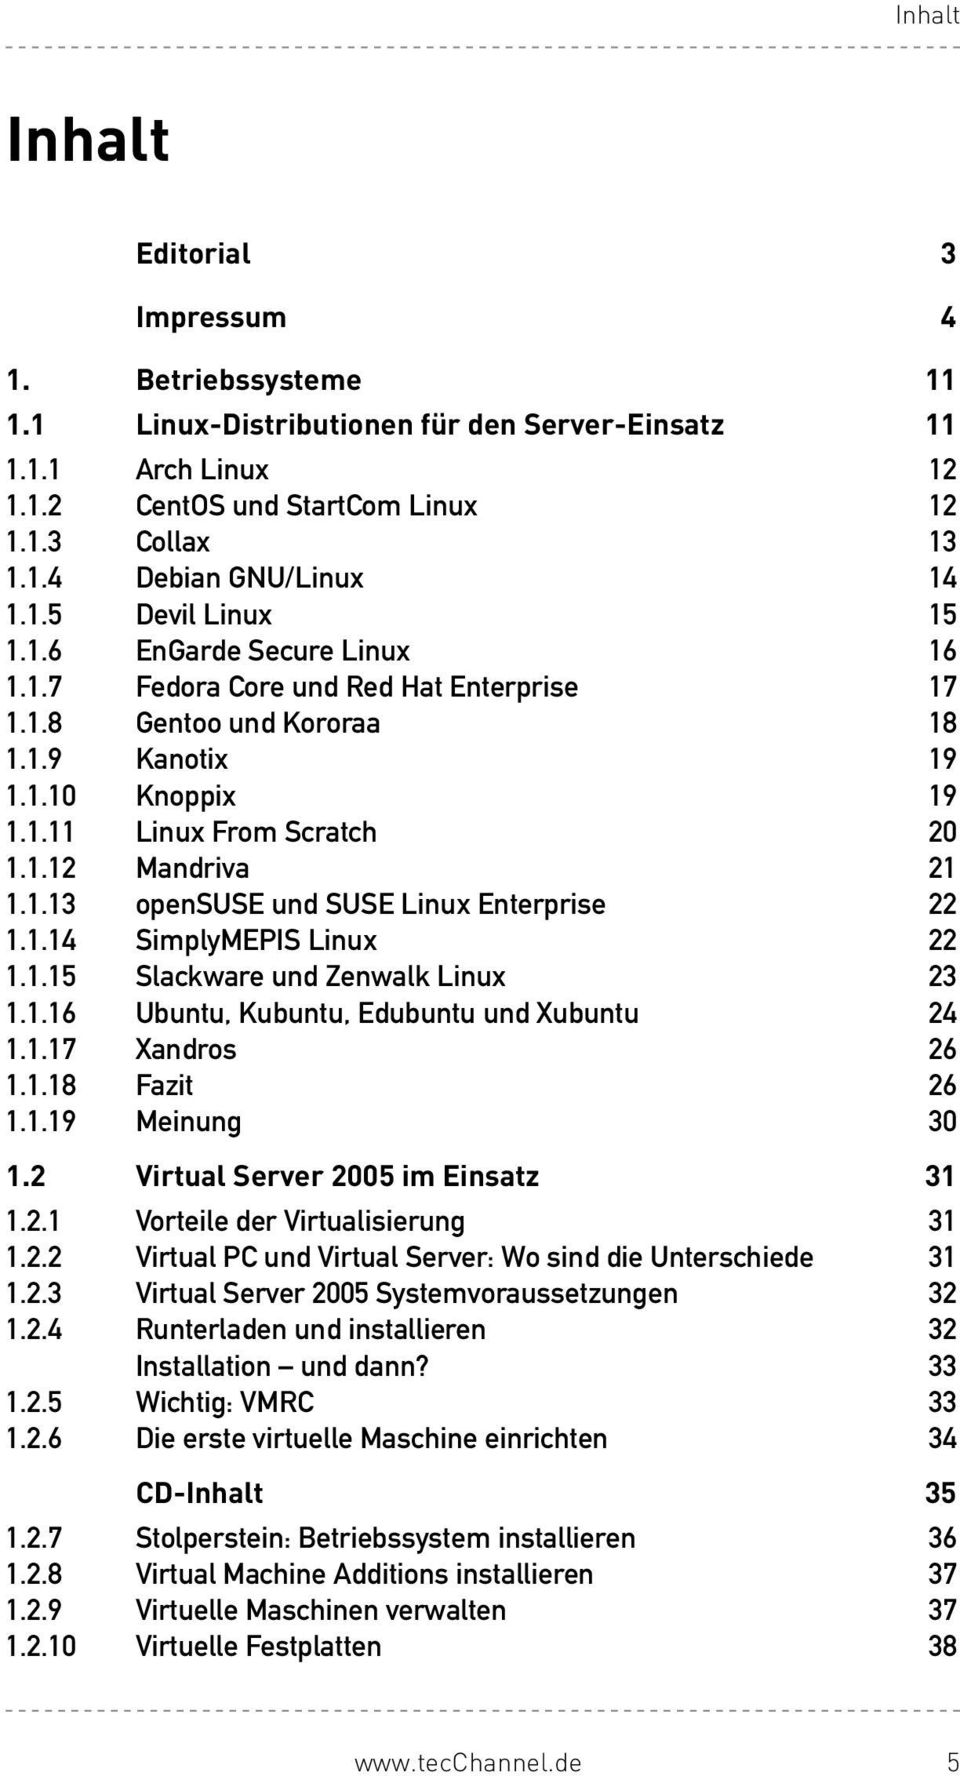 1.14 SimplyMEPISLinux 22 1.1.15 SlackwareundZenwalkLinux 23 1.1.16 Ubuntu,Kubuntu,EdubuntuundXubuntu 24 1.1.17 Xandros 26 1.1.18 Fazit 26 1.1.19 Meinung 30 1.2 Virtual Server 2005 im Einsatz 31 1.2.1 VorteilederVirtualisierung 31 1.